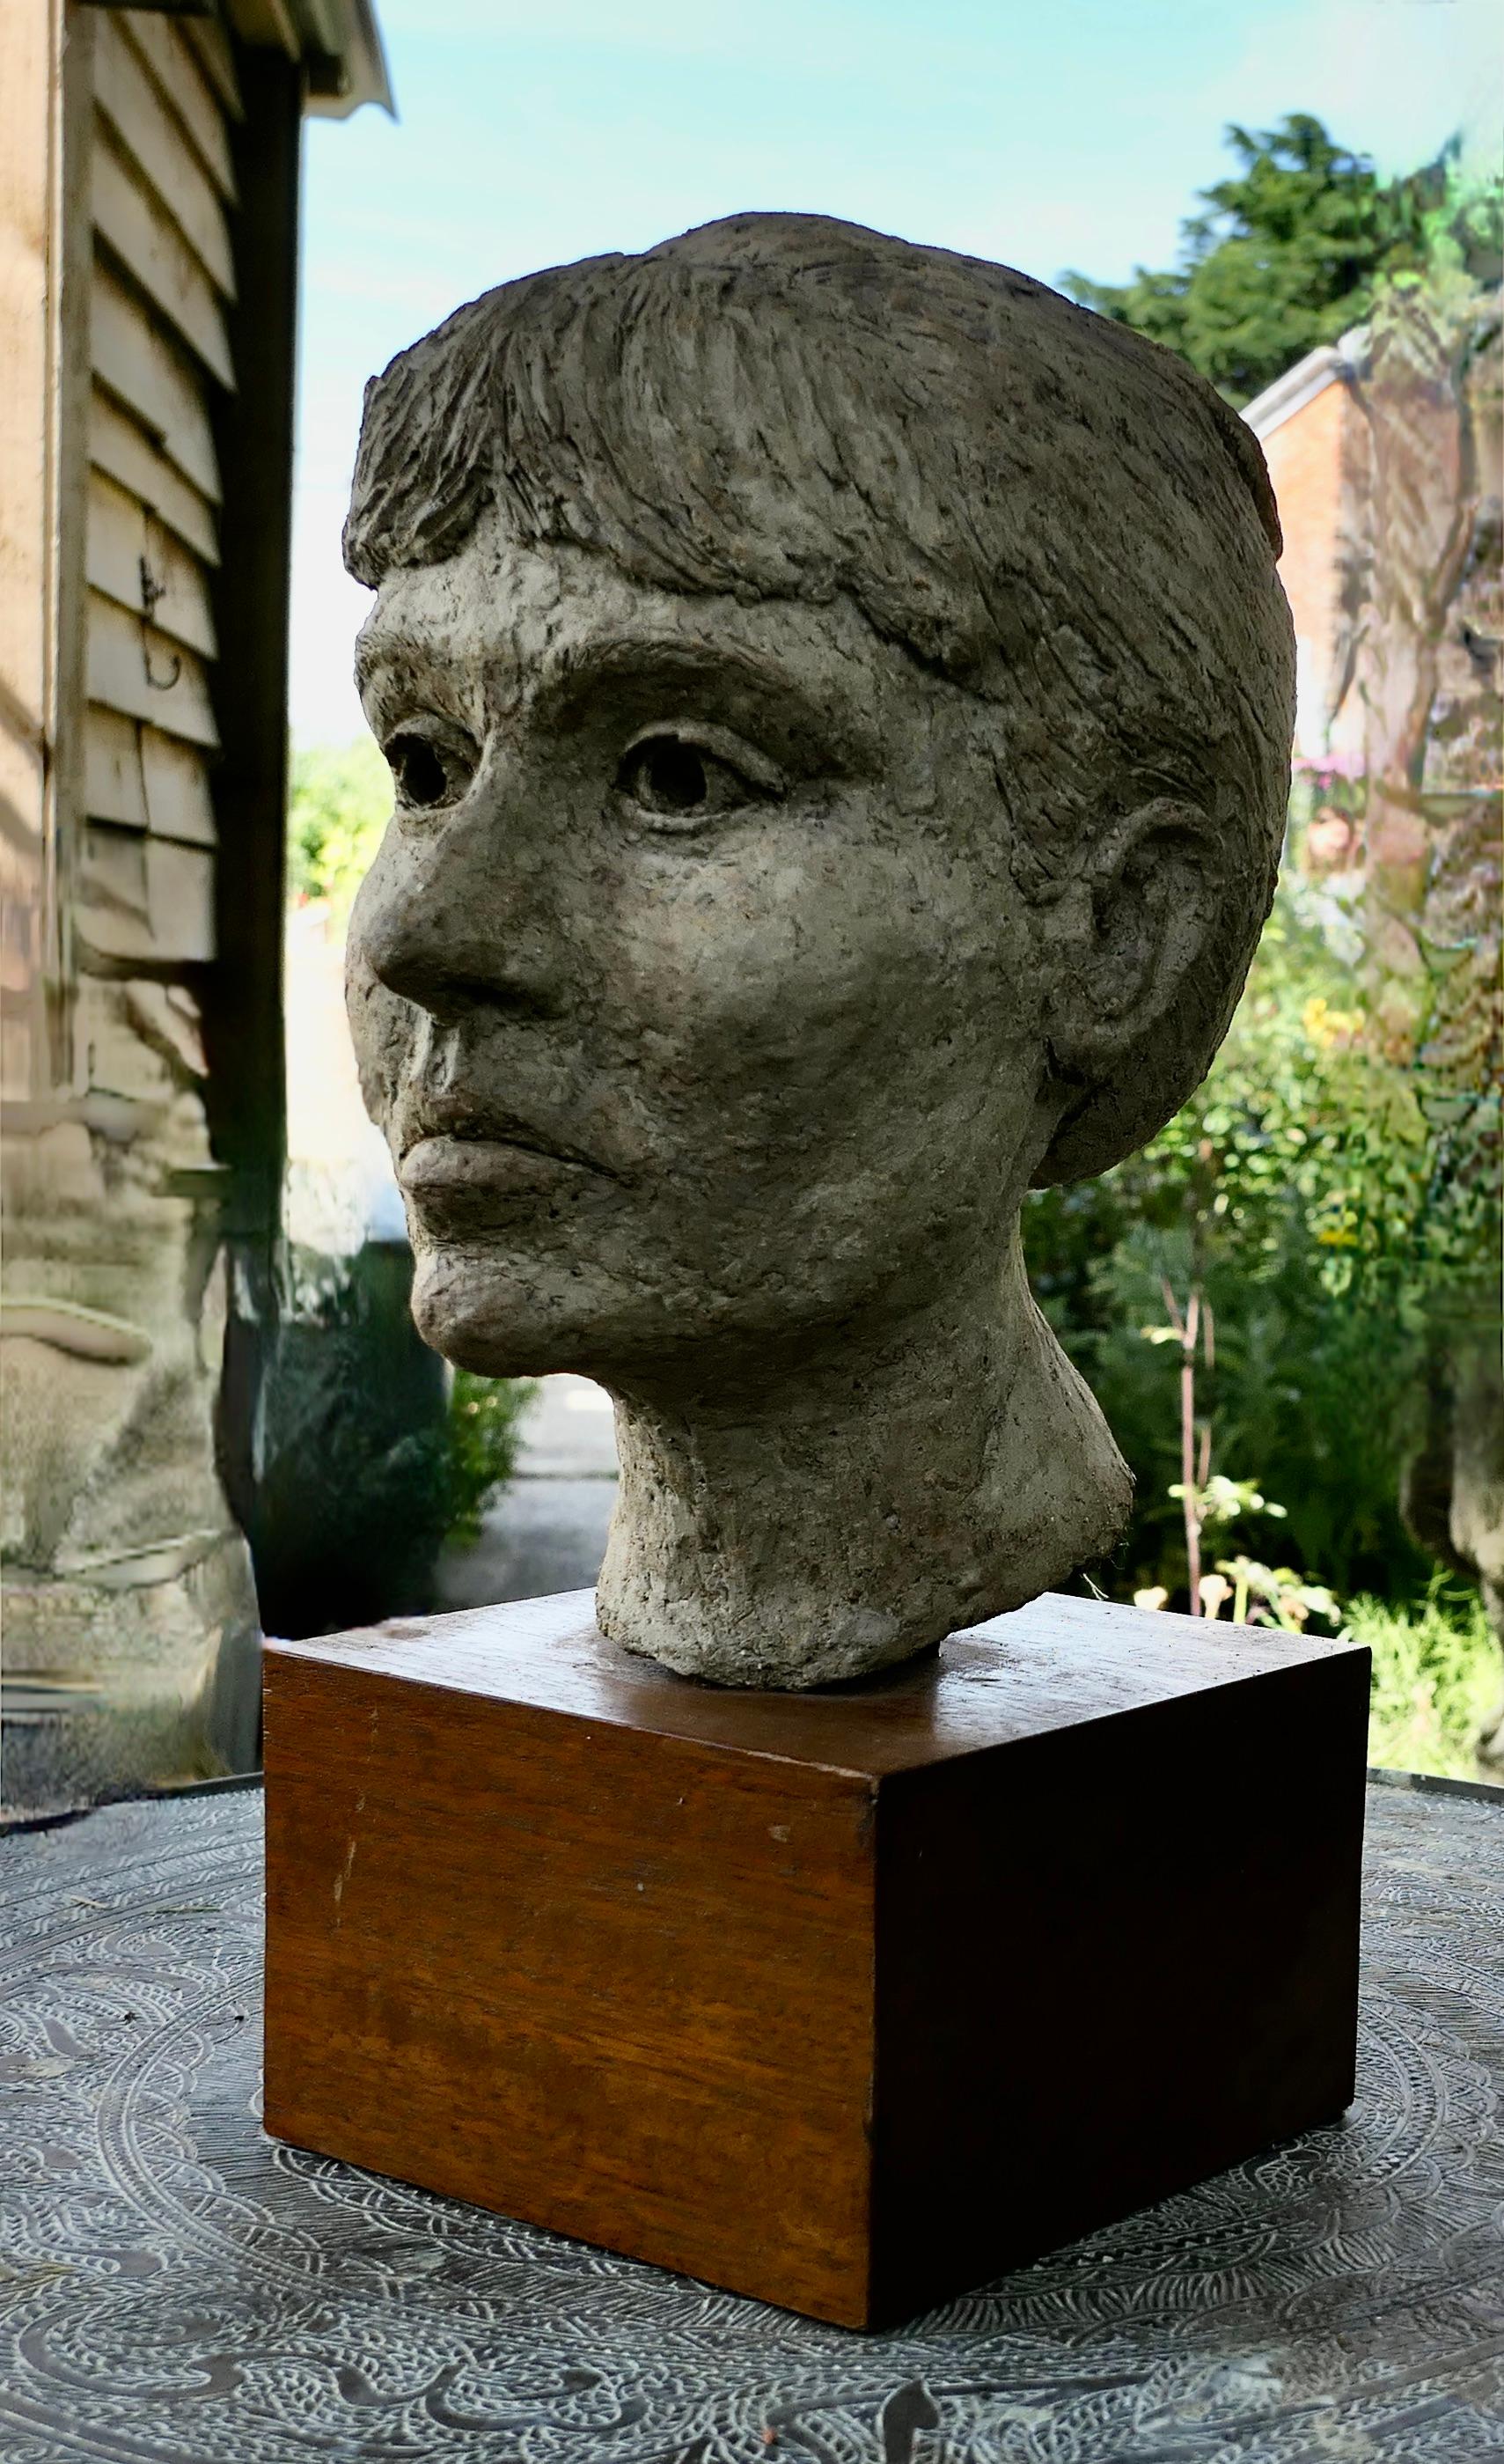 

Buste de femme d'Artistics, non signé

Il s'agit d'une pièce faite à la main datant du milieu du 20e siècle, découverte lors de la rénovation d'un Studio d'art. 

Il s'agit d'une tête de femme en trois dimensions, réalisée en argile et patinée par